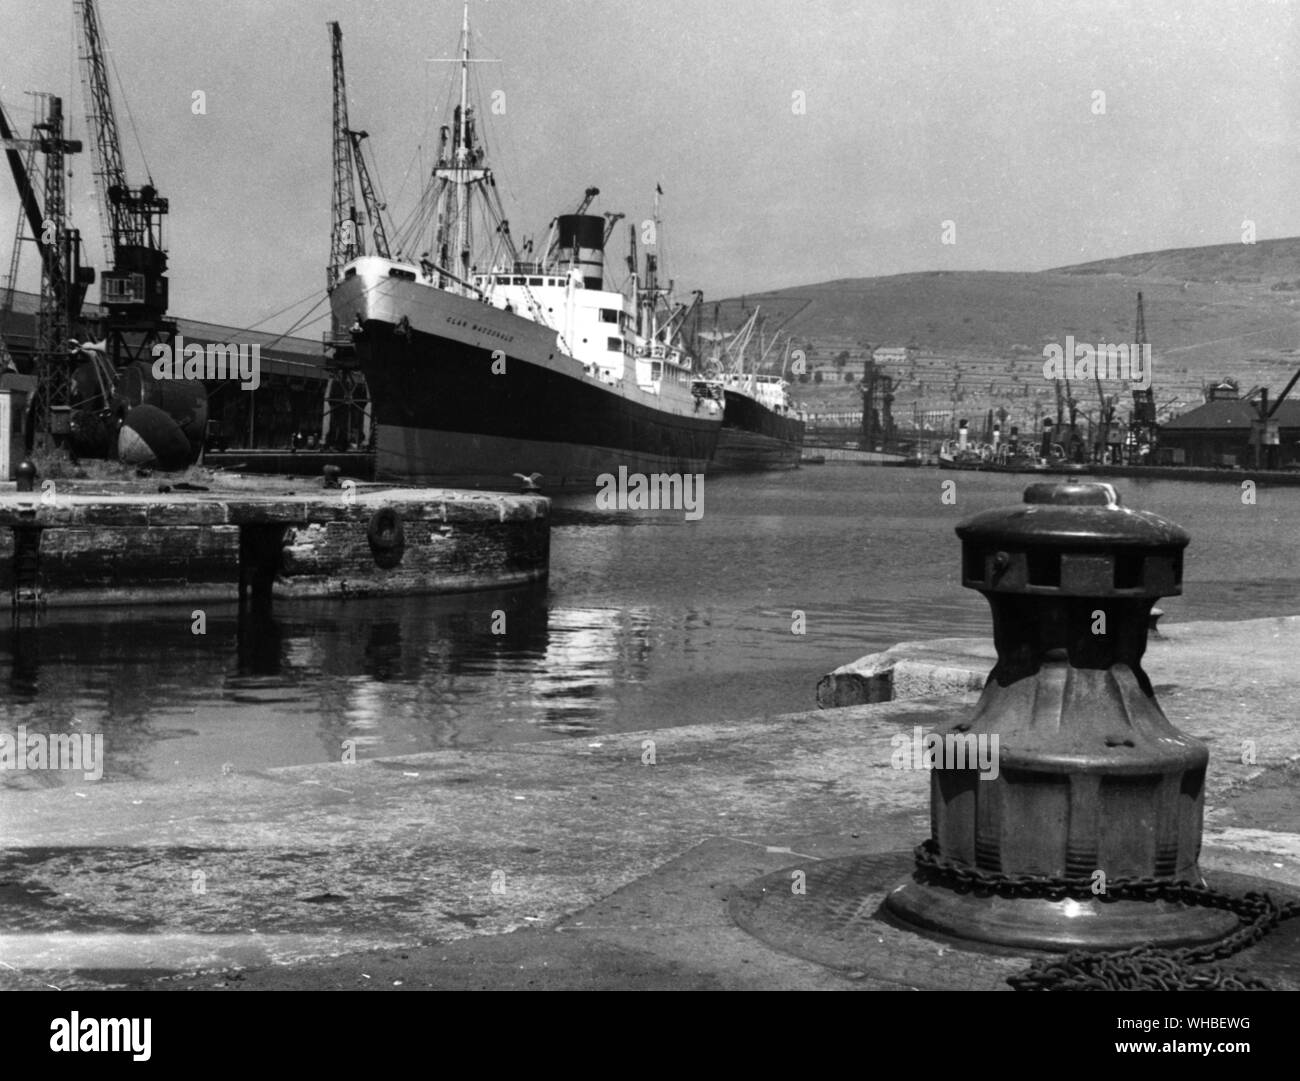 Eine Szene aus dem umfangreichen Docks in Swansea, Wales, Glamourganshire.. Stockfoto